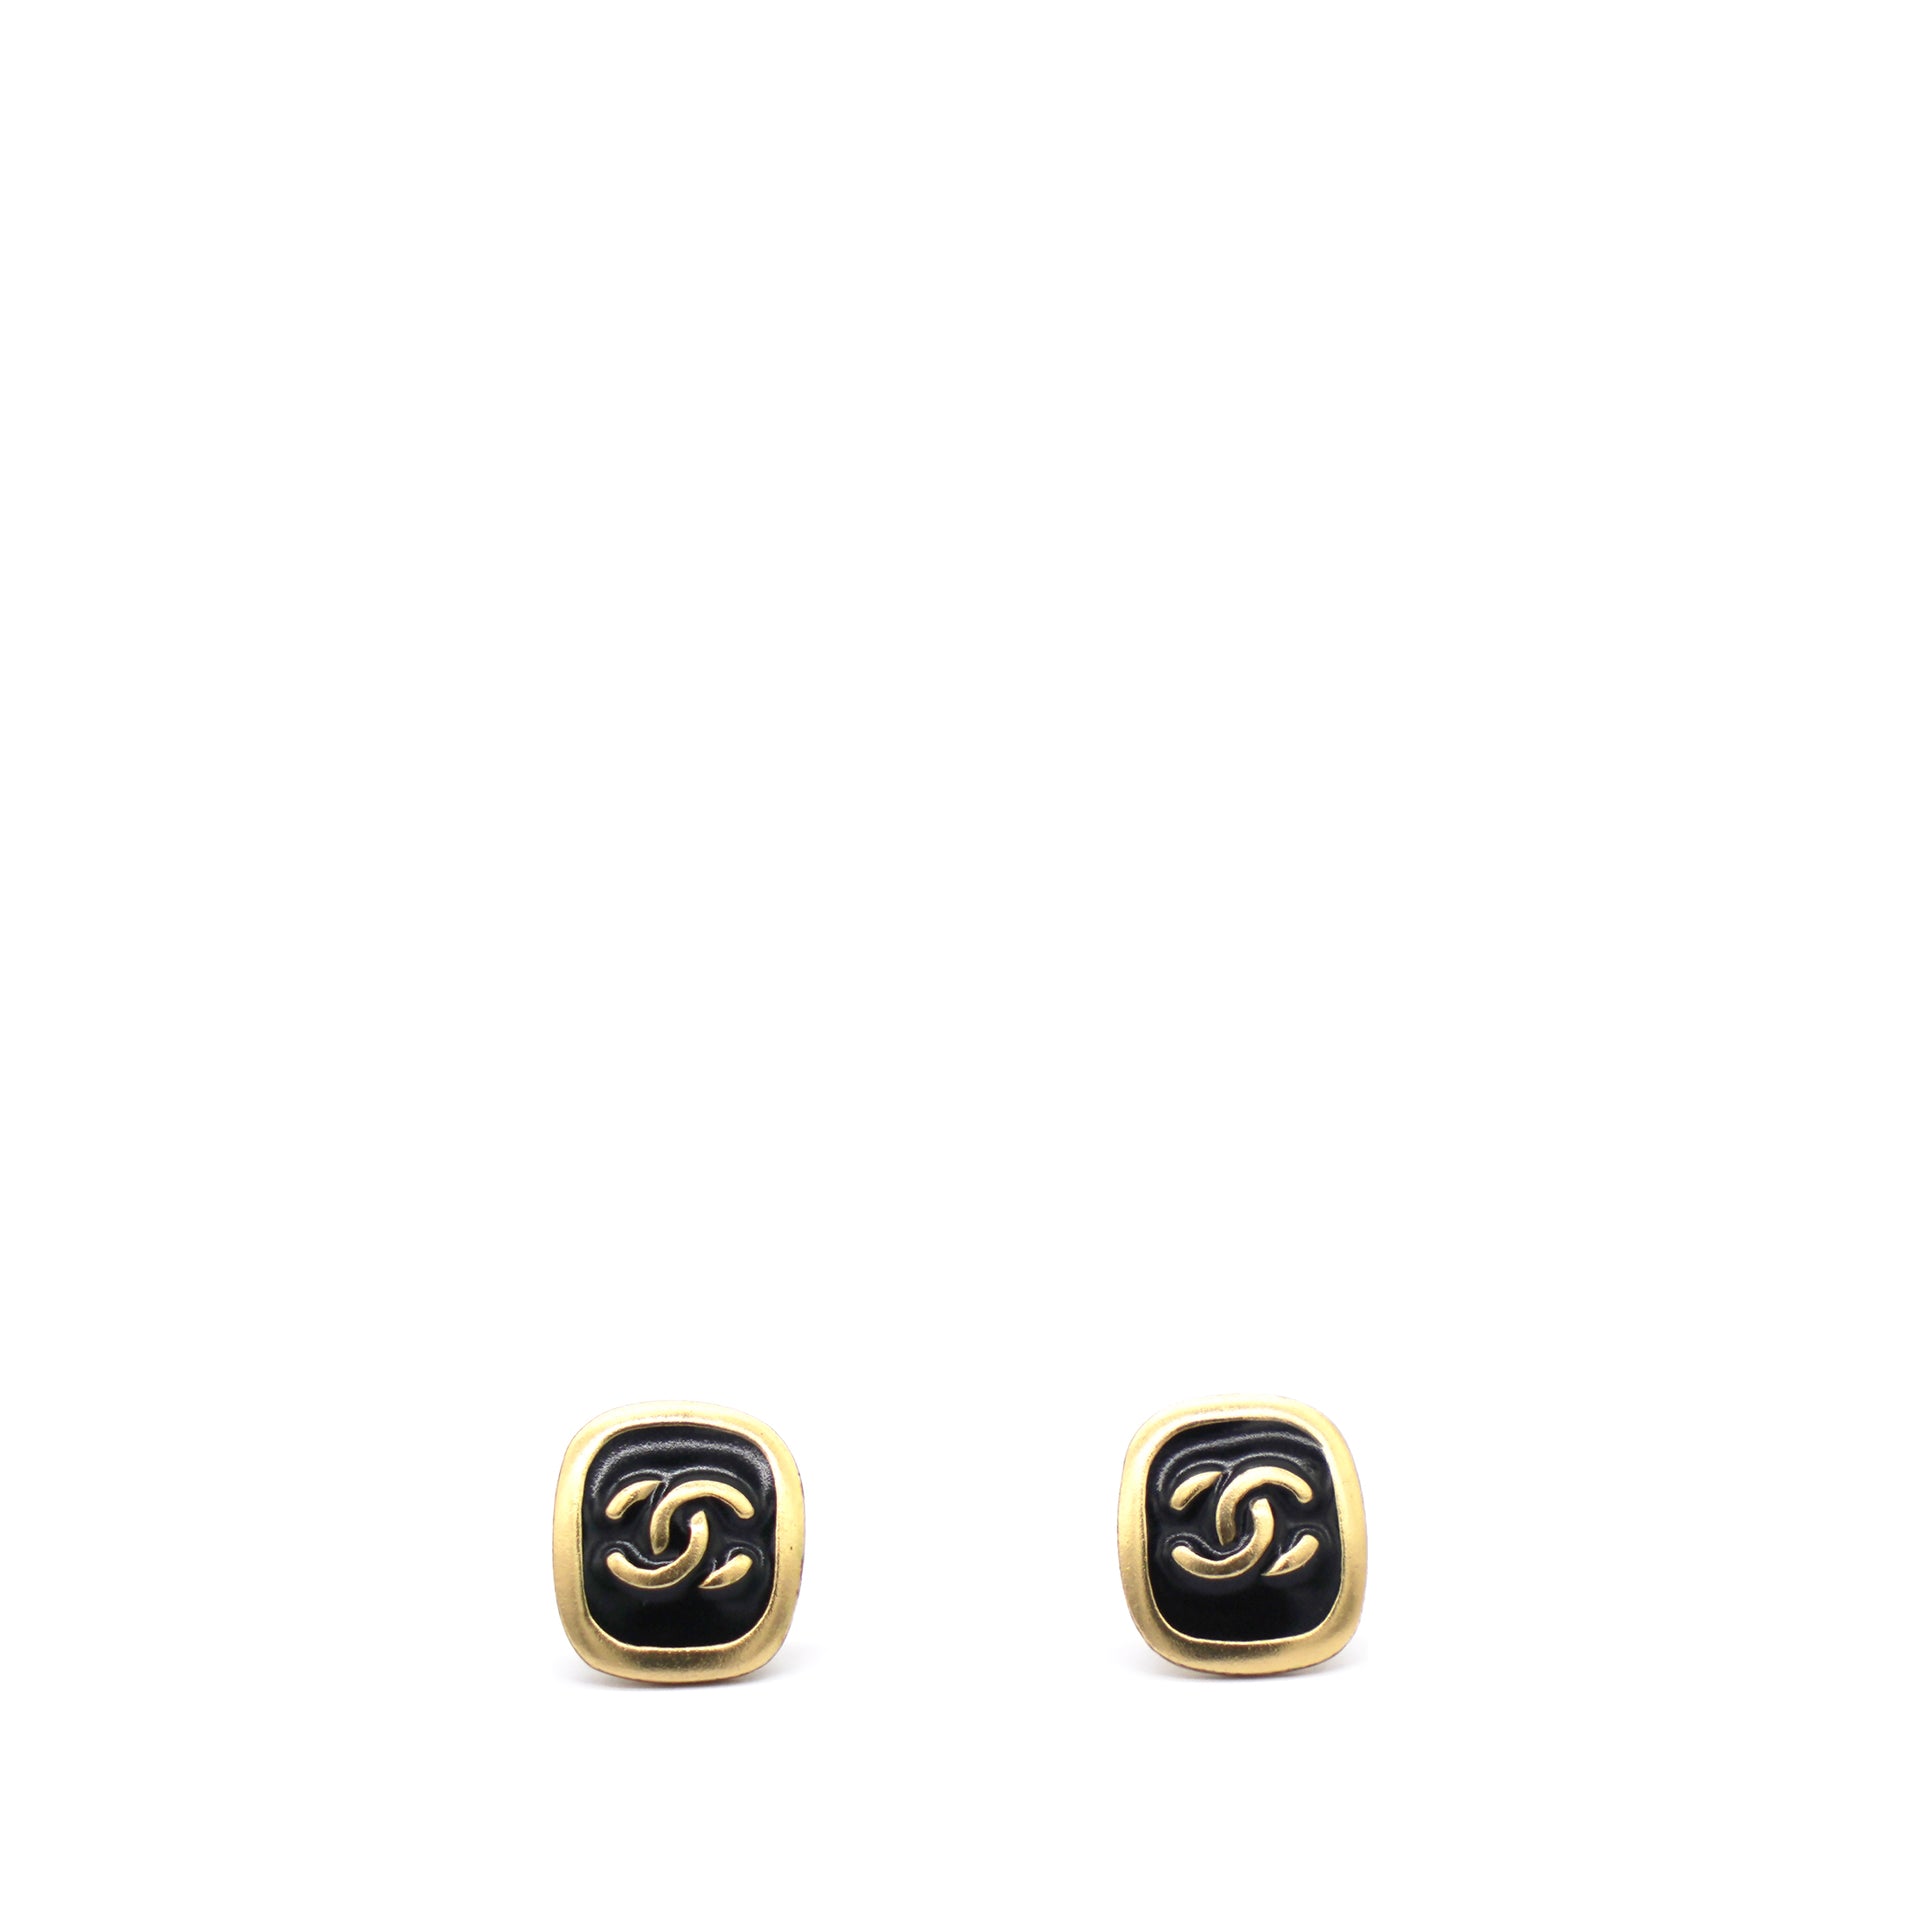 NEW 23C Chanel CC Stud Earrings Gold Black Classic Flap Bag Handbag FULL SET